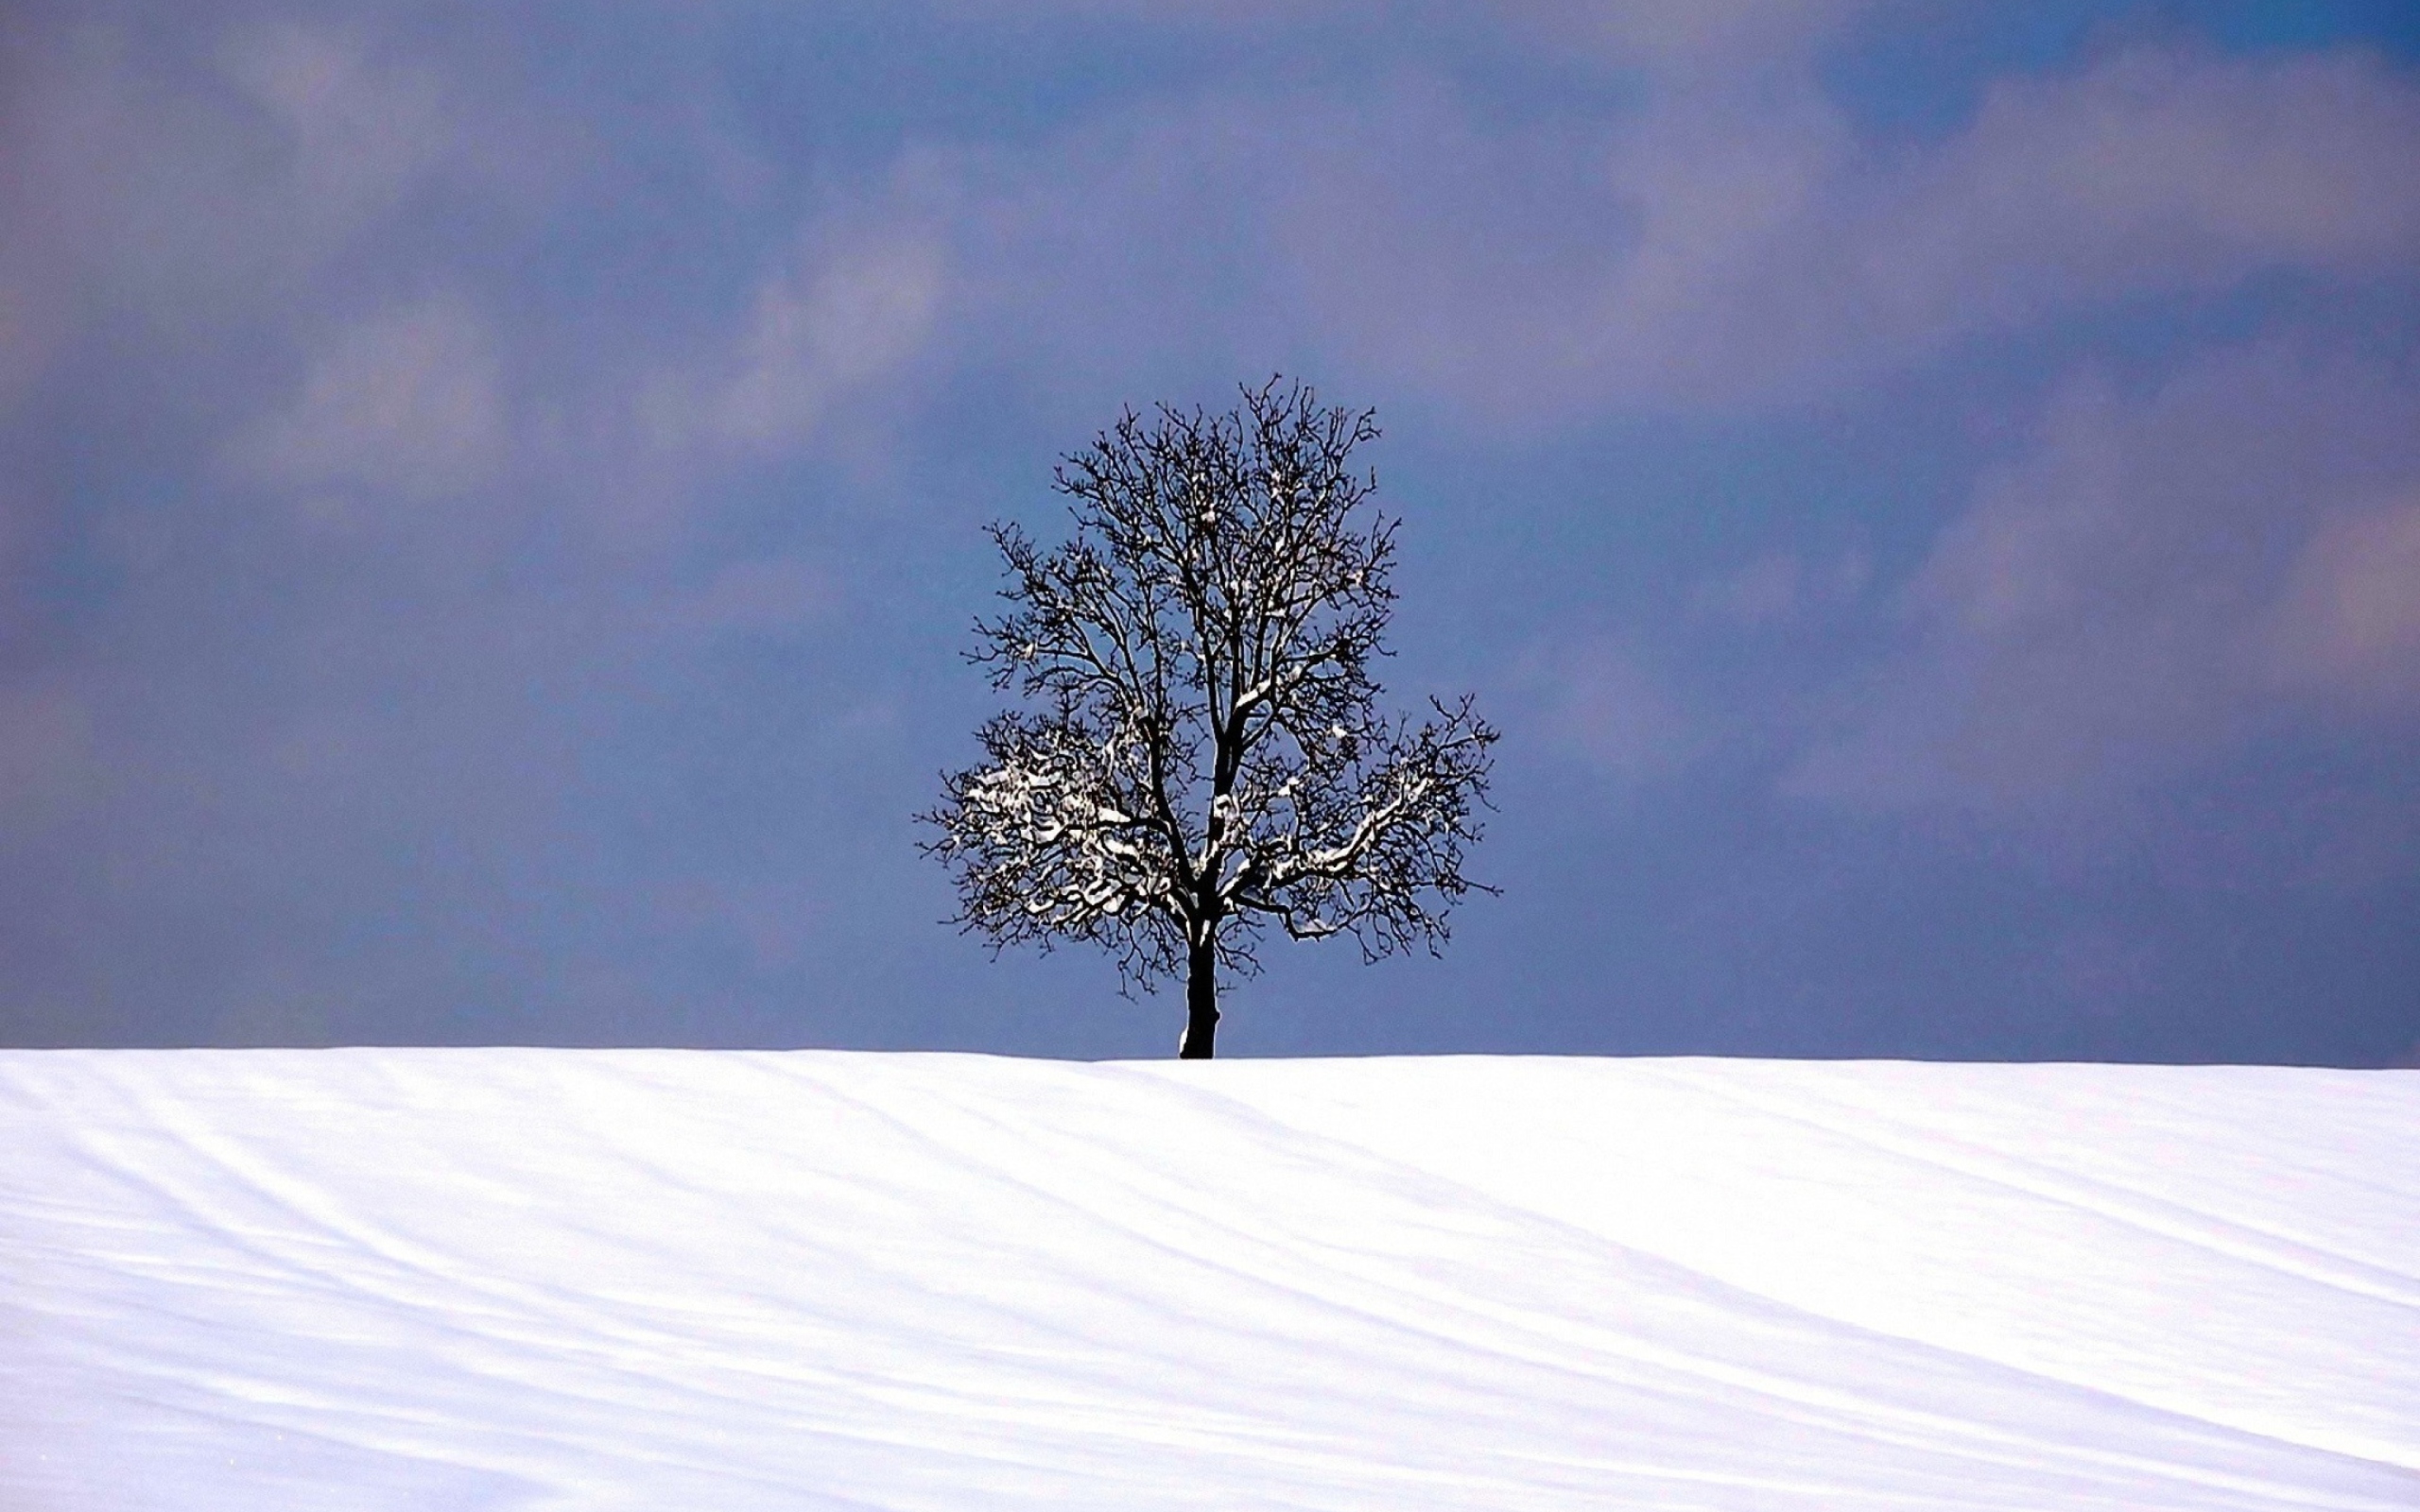 Обои Tree And Snow 2560x1600